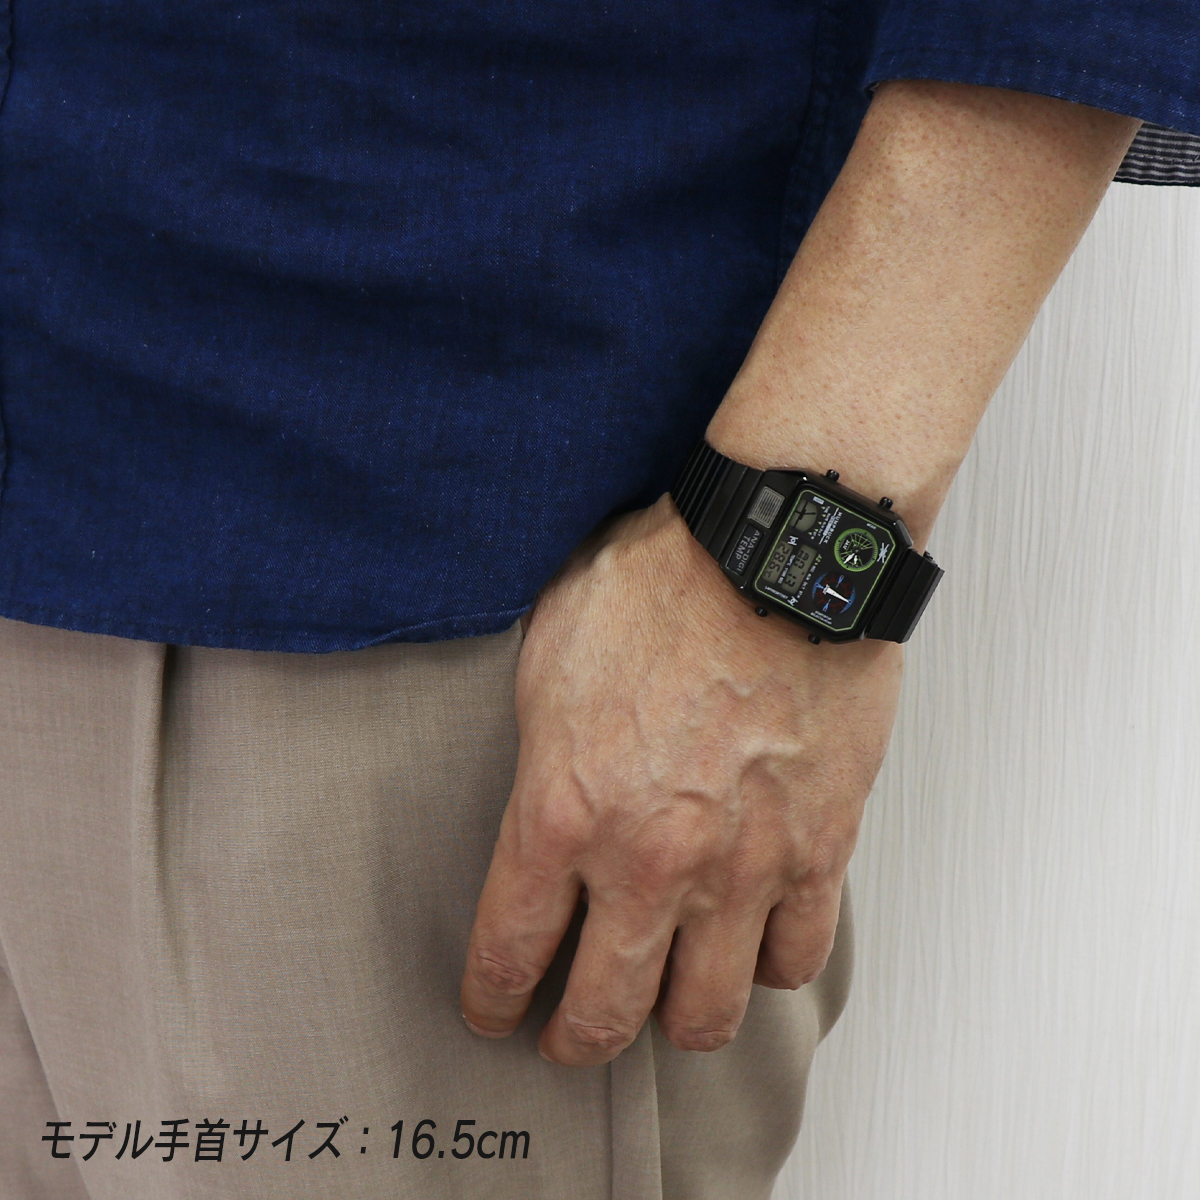 6ヶ月保証 未使用 アウトレット アナデジテンプ ブラック グリーン ANA-DIGI TEMP 6 デジアナ 温度計 腕時計 復刻デザイン メンズ 男性_画像3